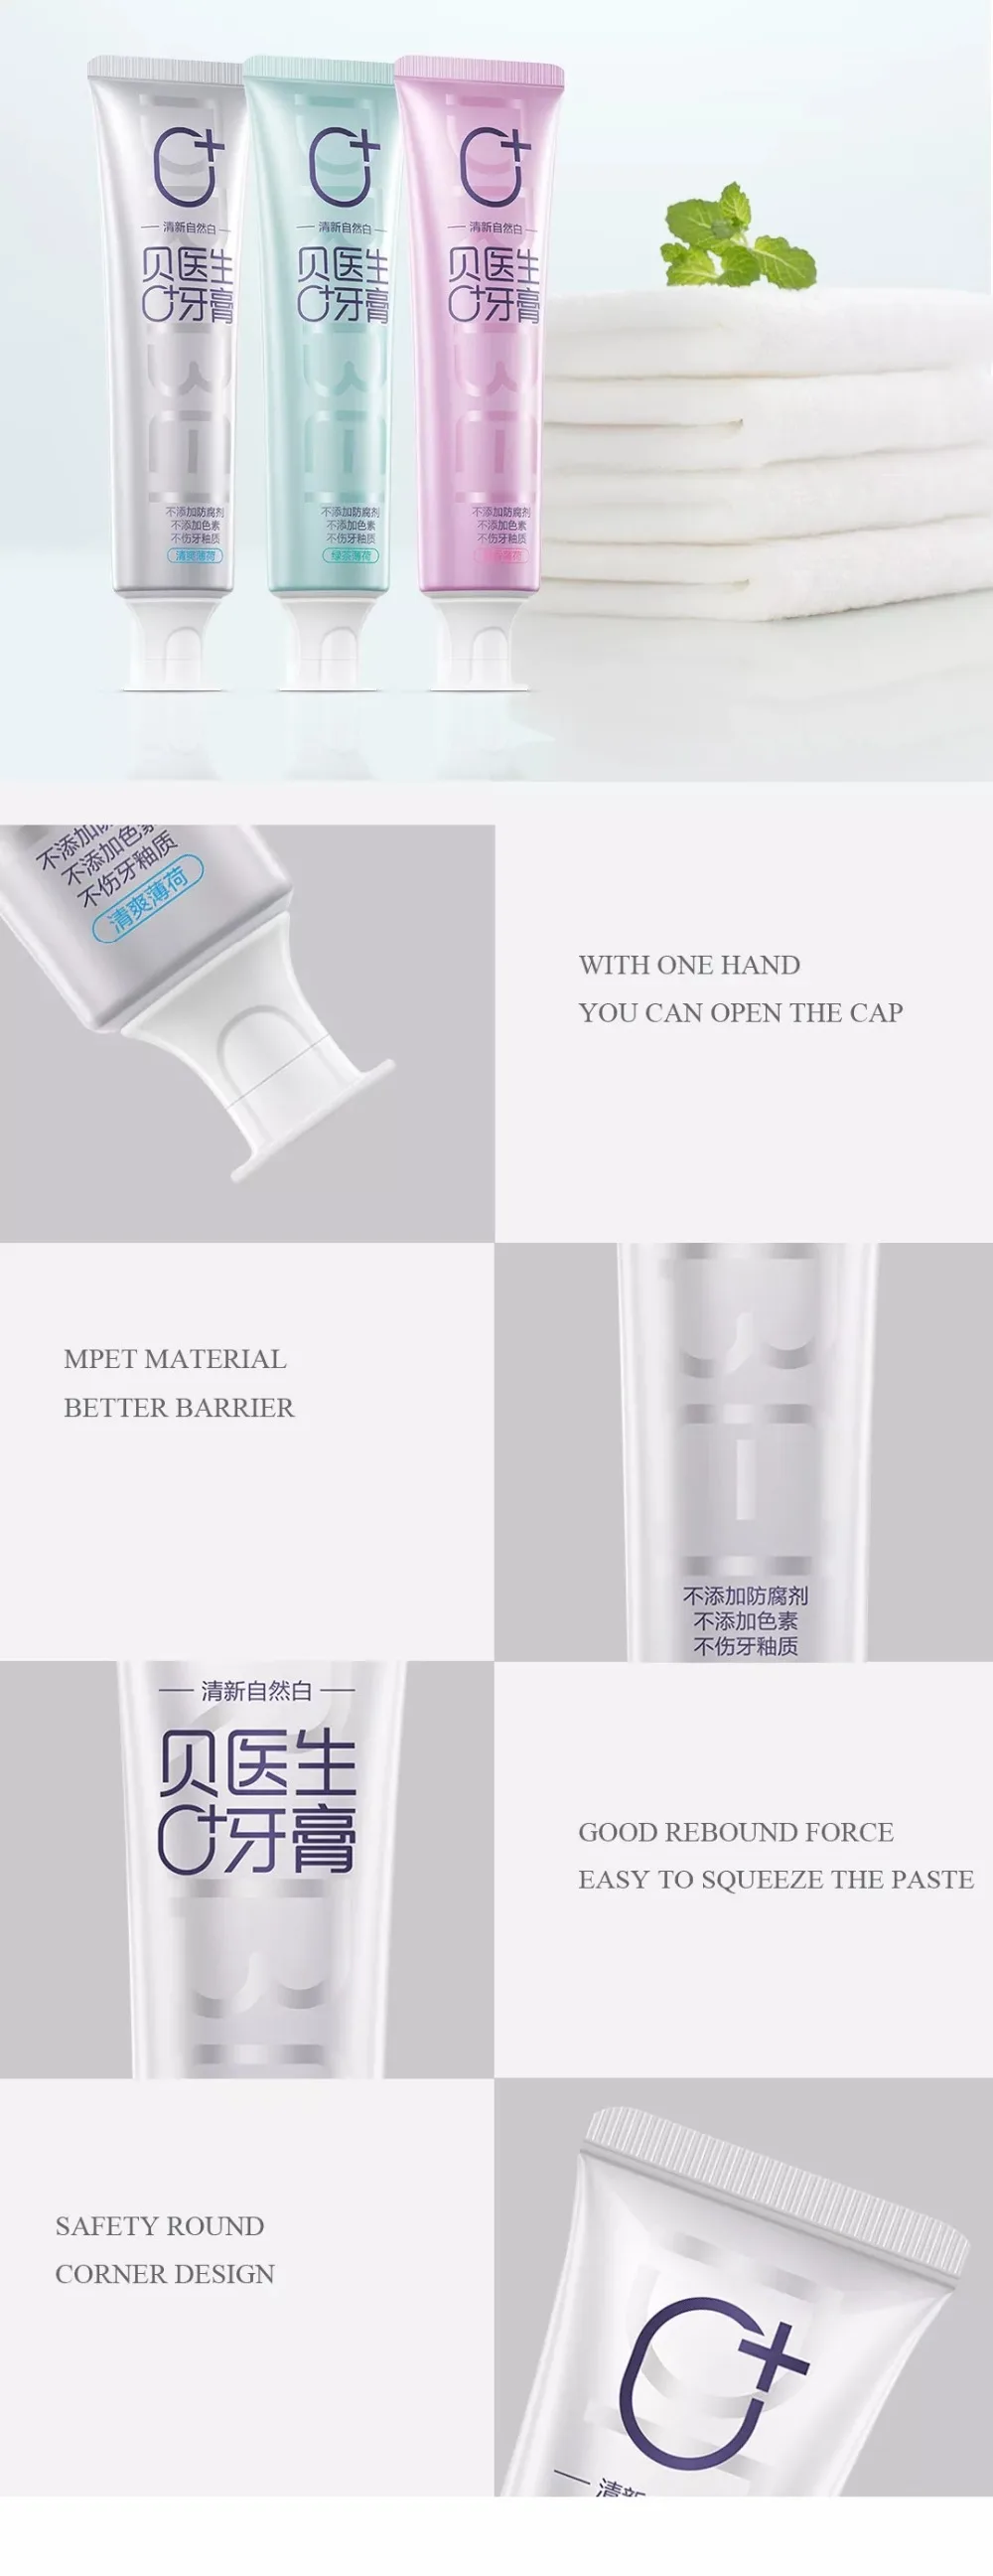 Xiaomi Mijia Dr. Bei 0+ пробиотическая зубная паста натуральная зубная паста отбеливание зубов эмаль Защита зубов свежий здоровье красота инструмент